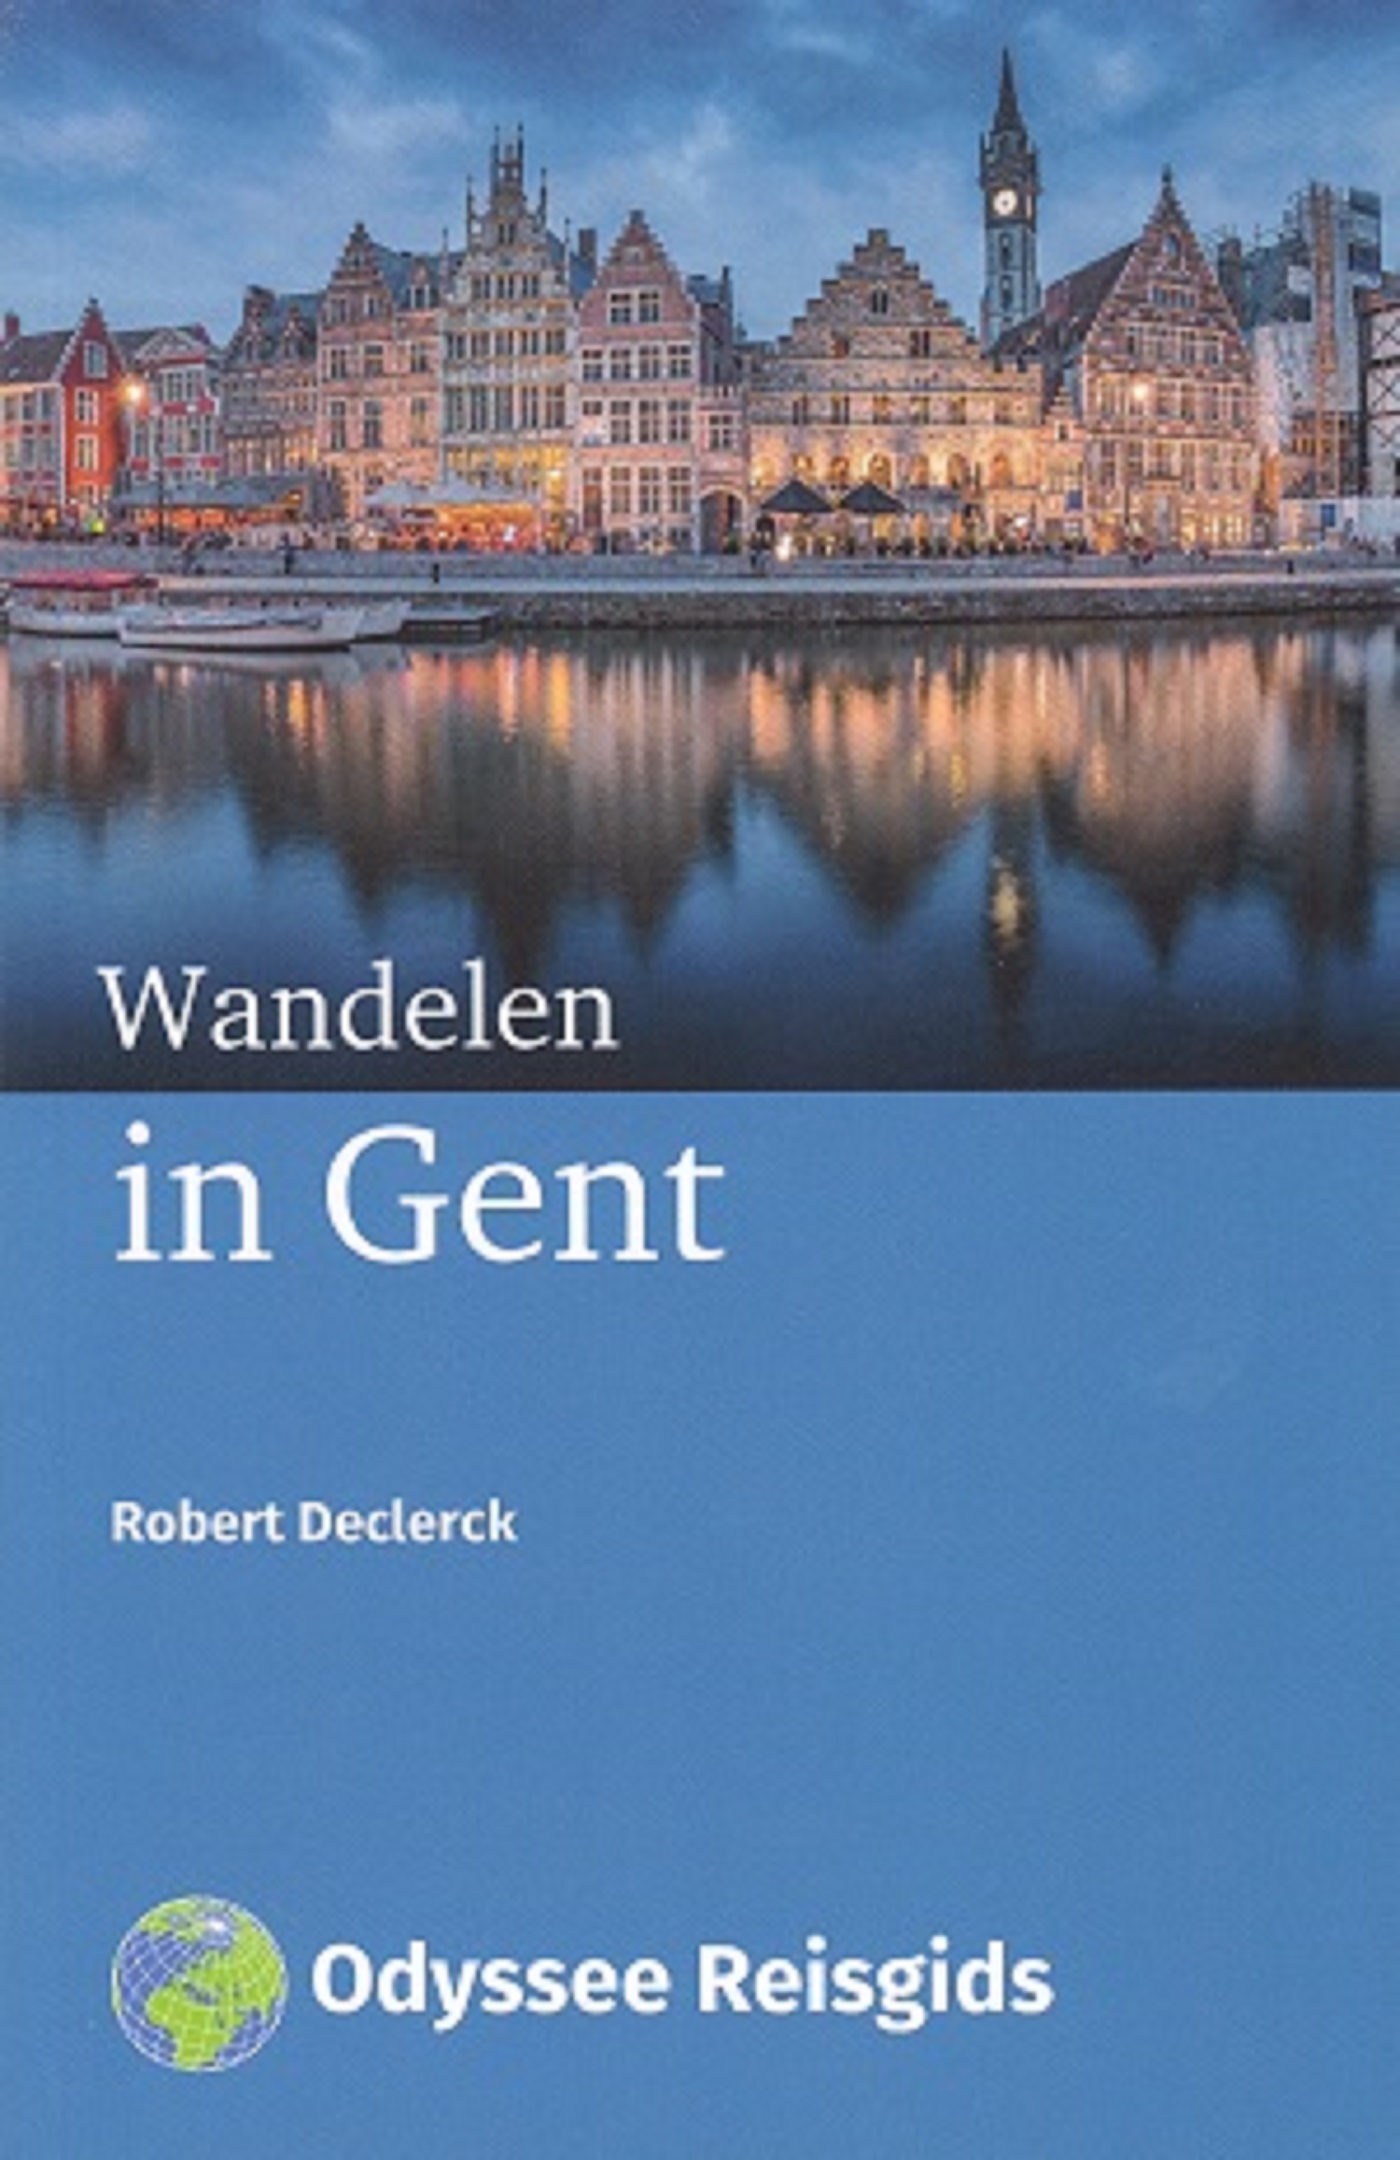 Wandelen in Gent (Ebook)